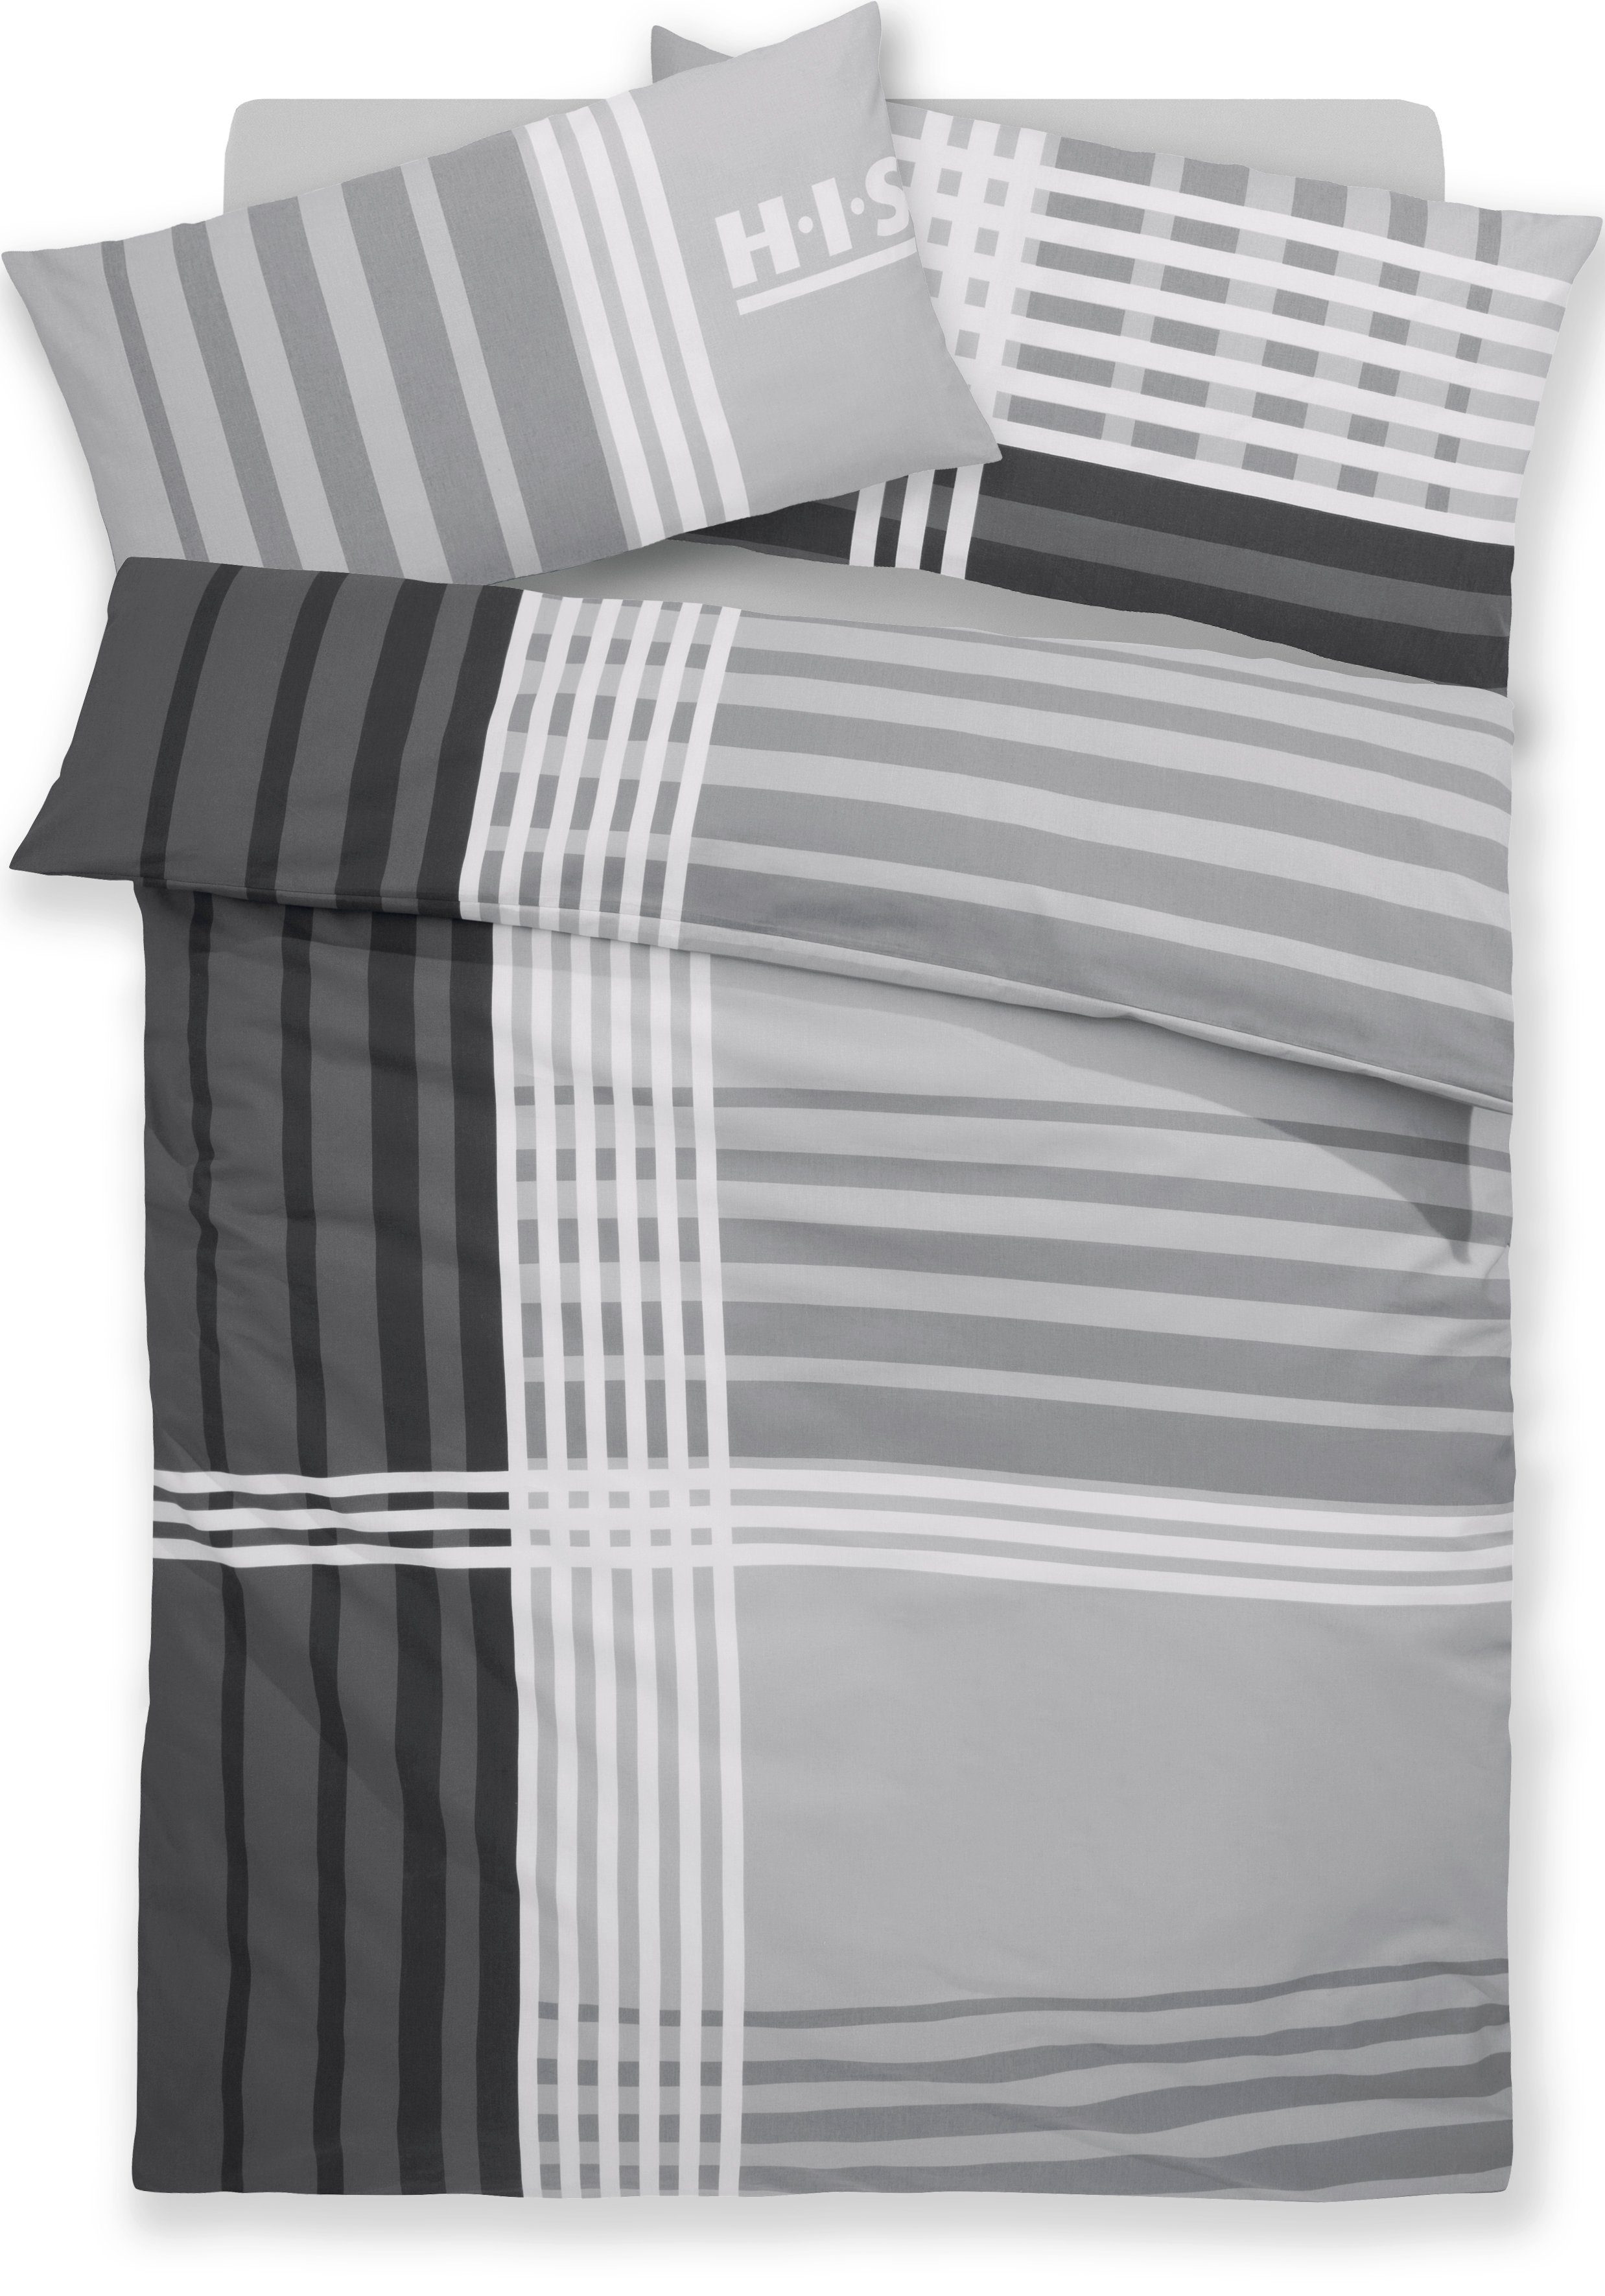 Bettwäsche Philip in Gr. 135x200 oder 155x220 cm, H.I.S, Renforcé, 2 teilig, sportliche Bettwäsche aus Baumwolle, kariert grau